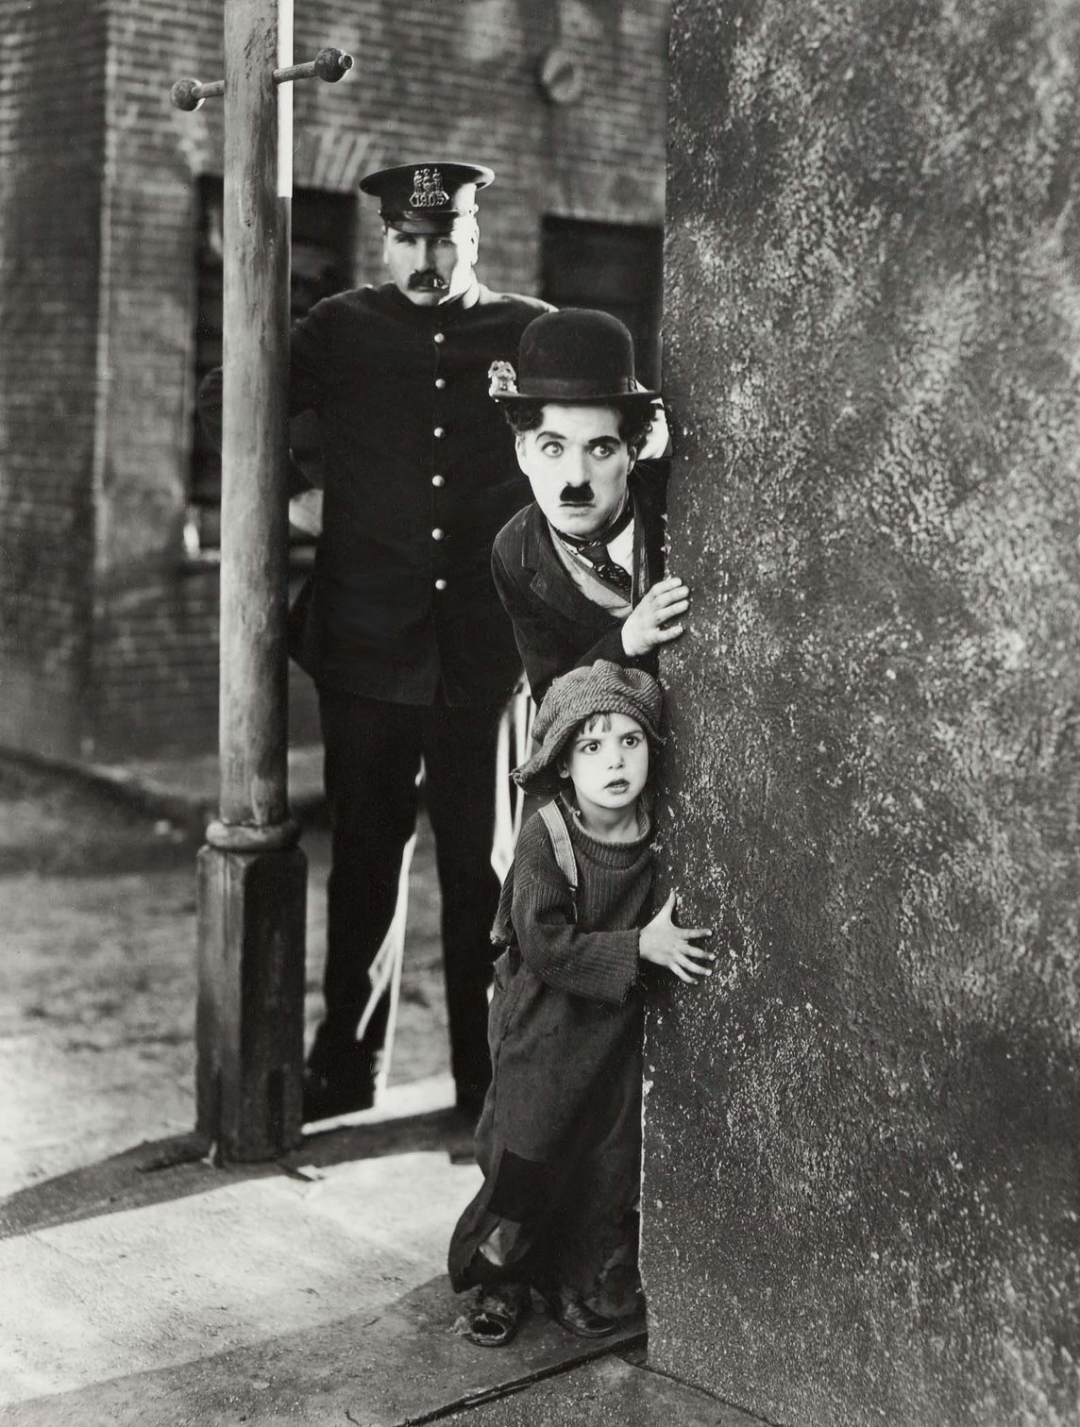 《寻子遇仙记》，拍摄于1921年，讲述了一名穷苦的女人将孩子遗弃，被一个流浪汉拾回，抚养成人，后来孩子找到亲生母亲的故事，卓别林饰演的是流浪汉夏尔洛